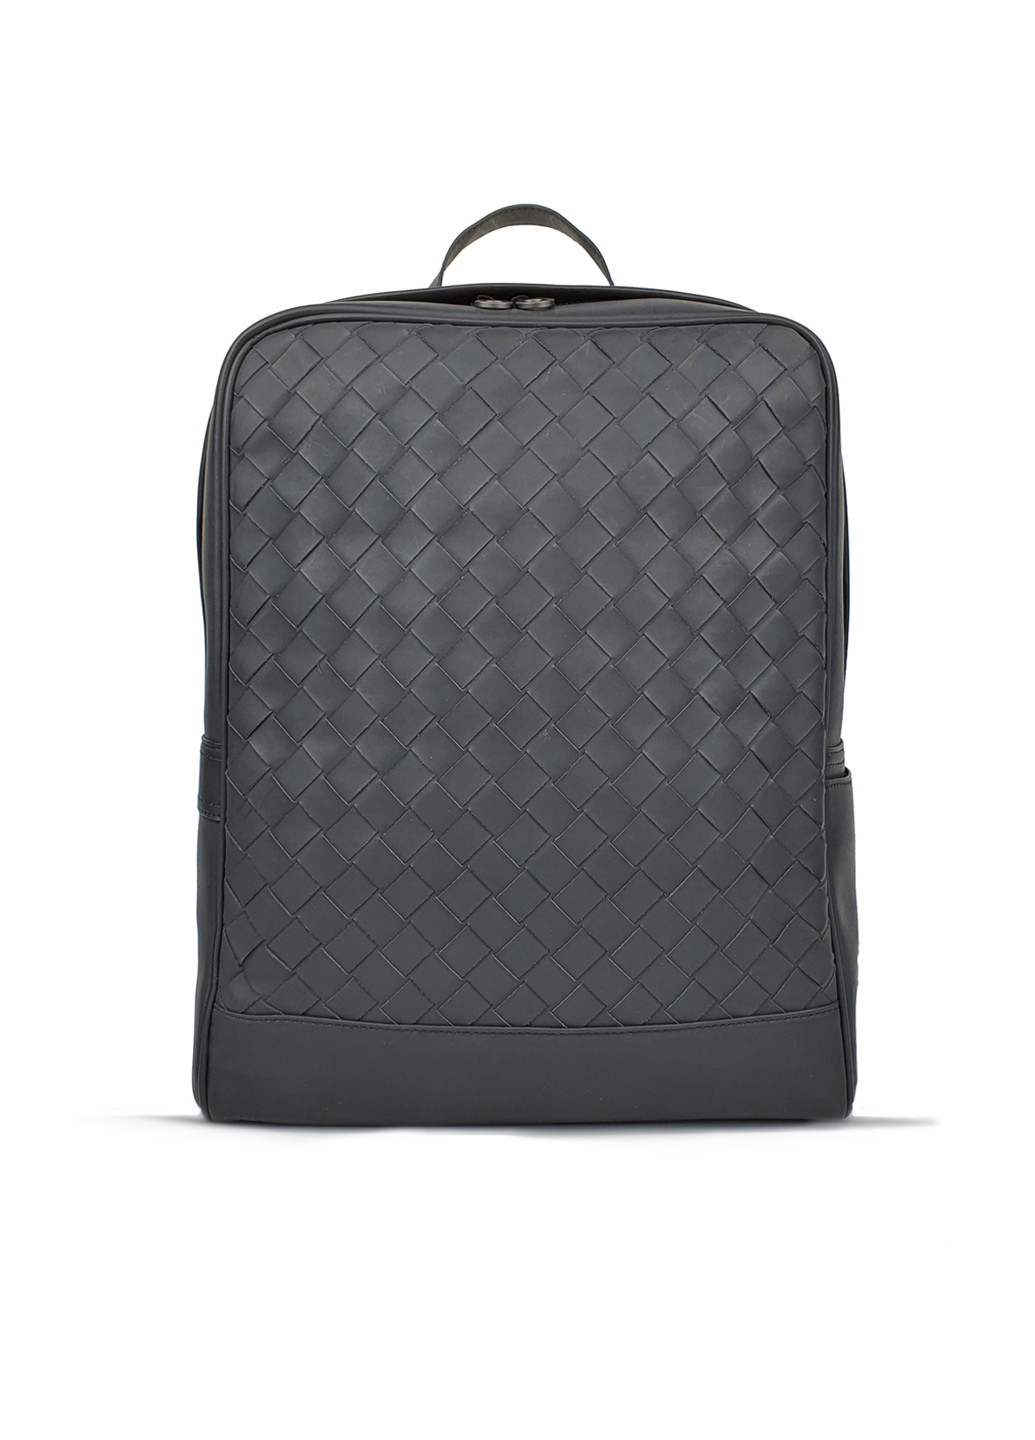 Великий чоловічий рюкзак чорний шкіряний Fashion рюкзак (251825964)